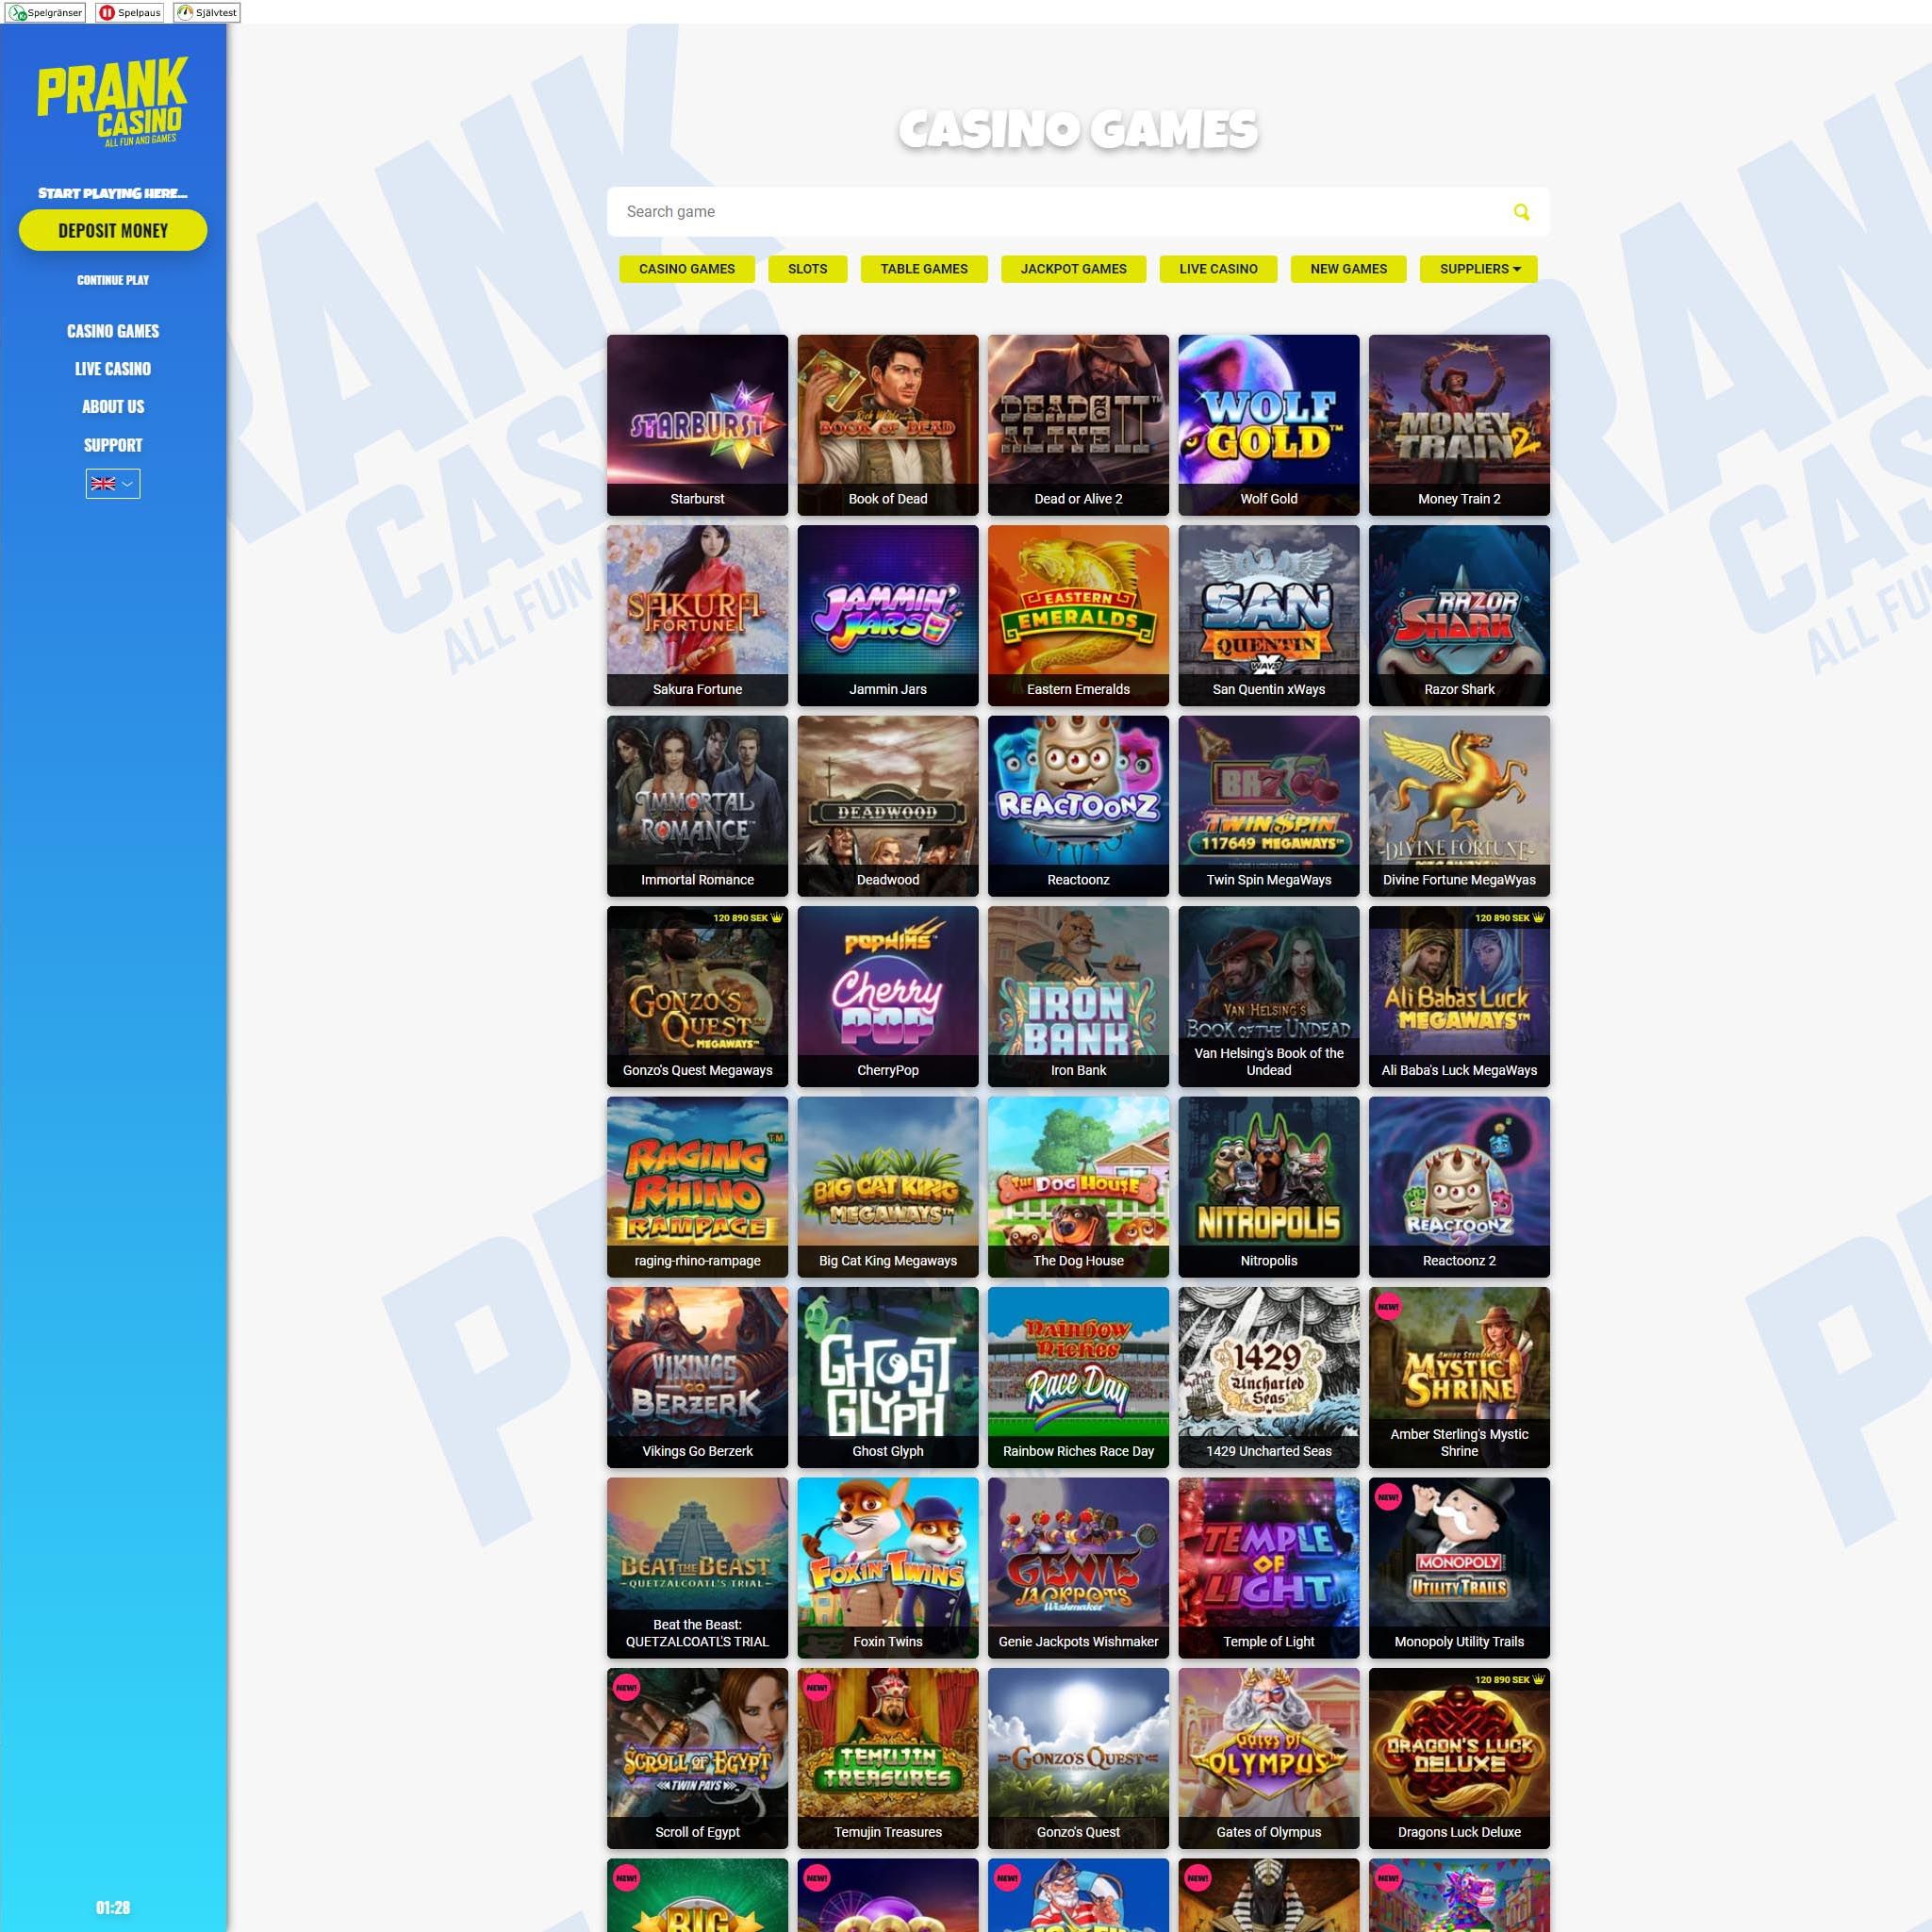 Prank Casino game catalogue